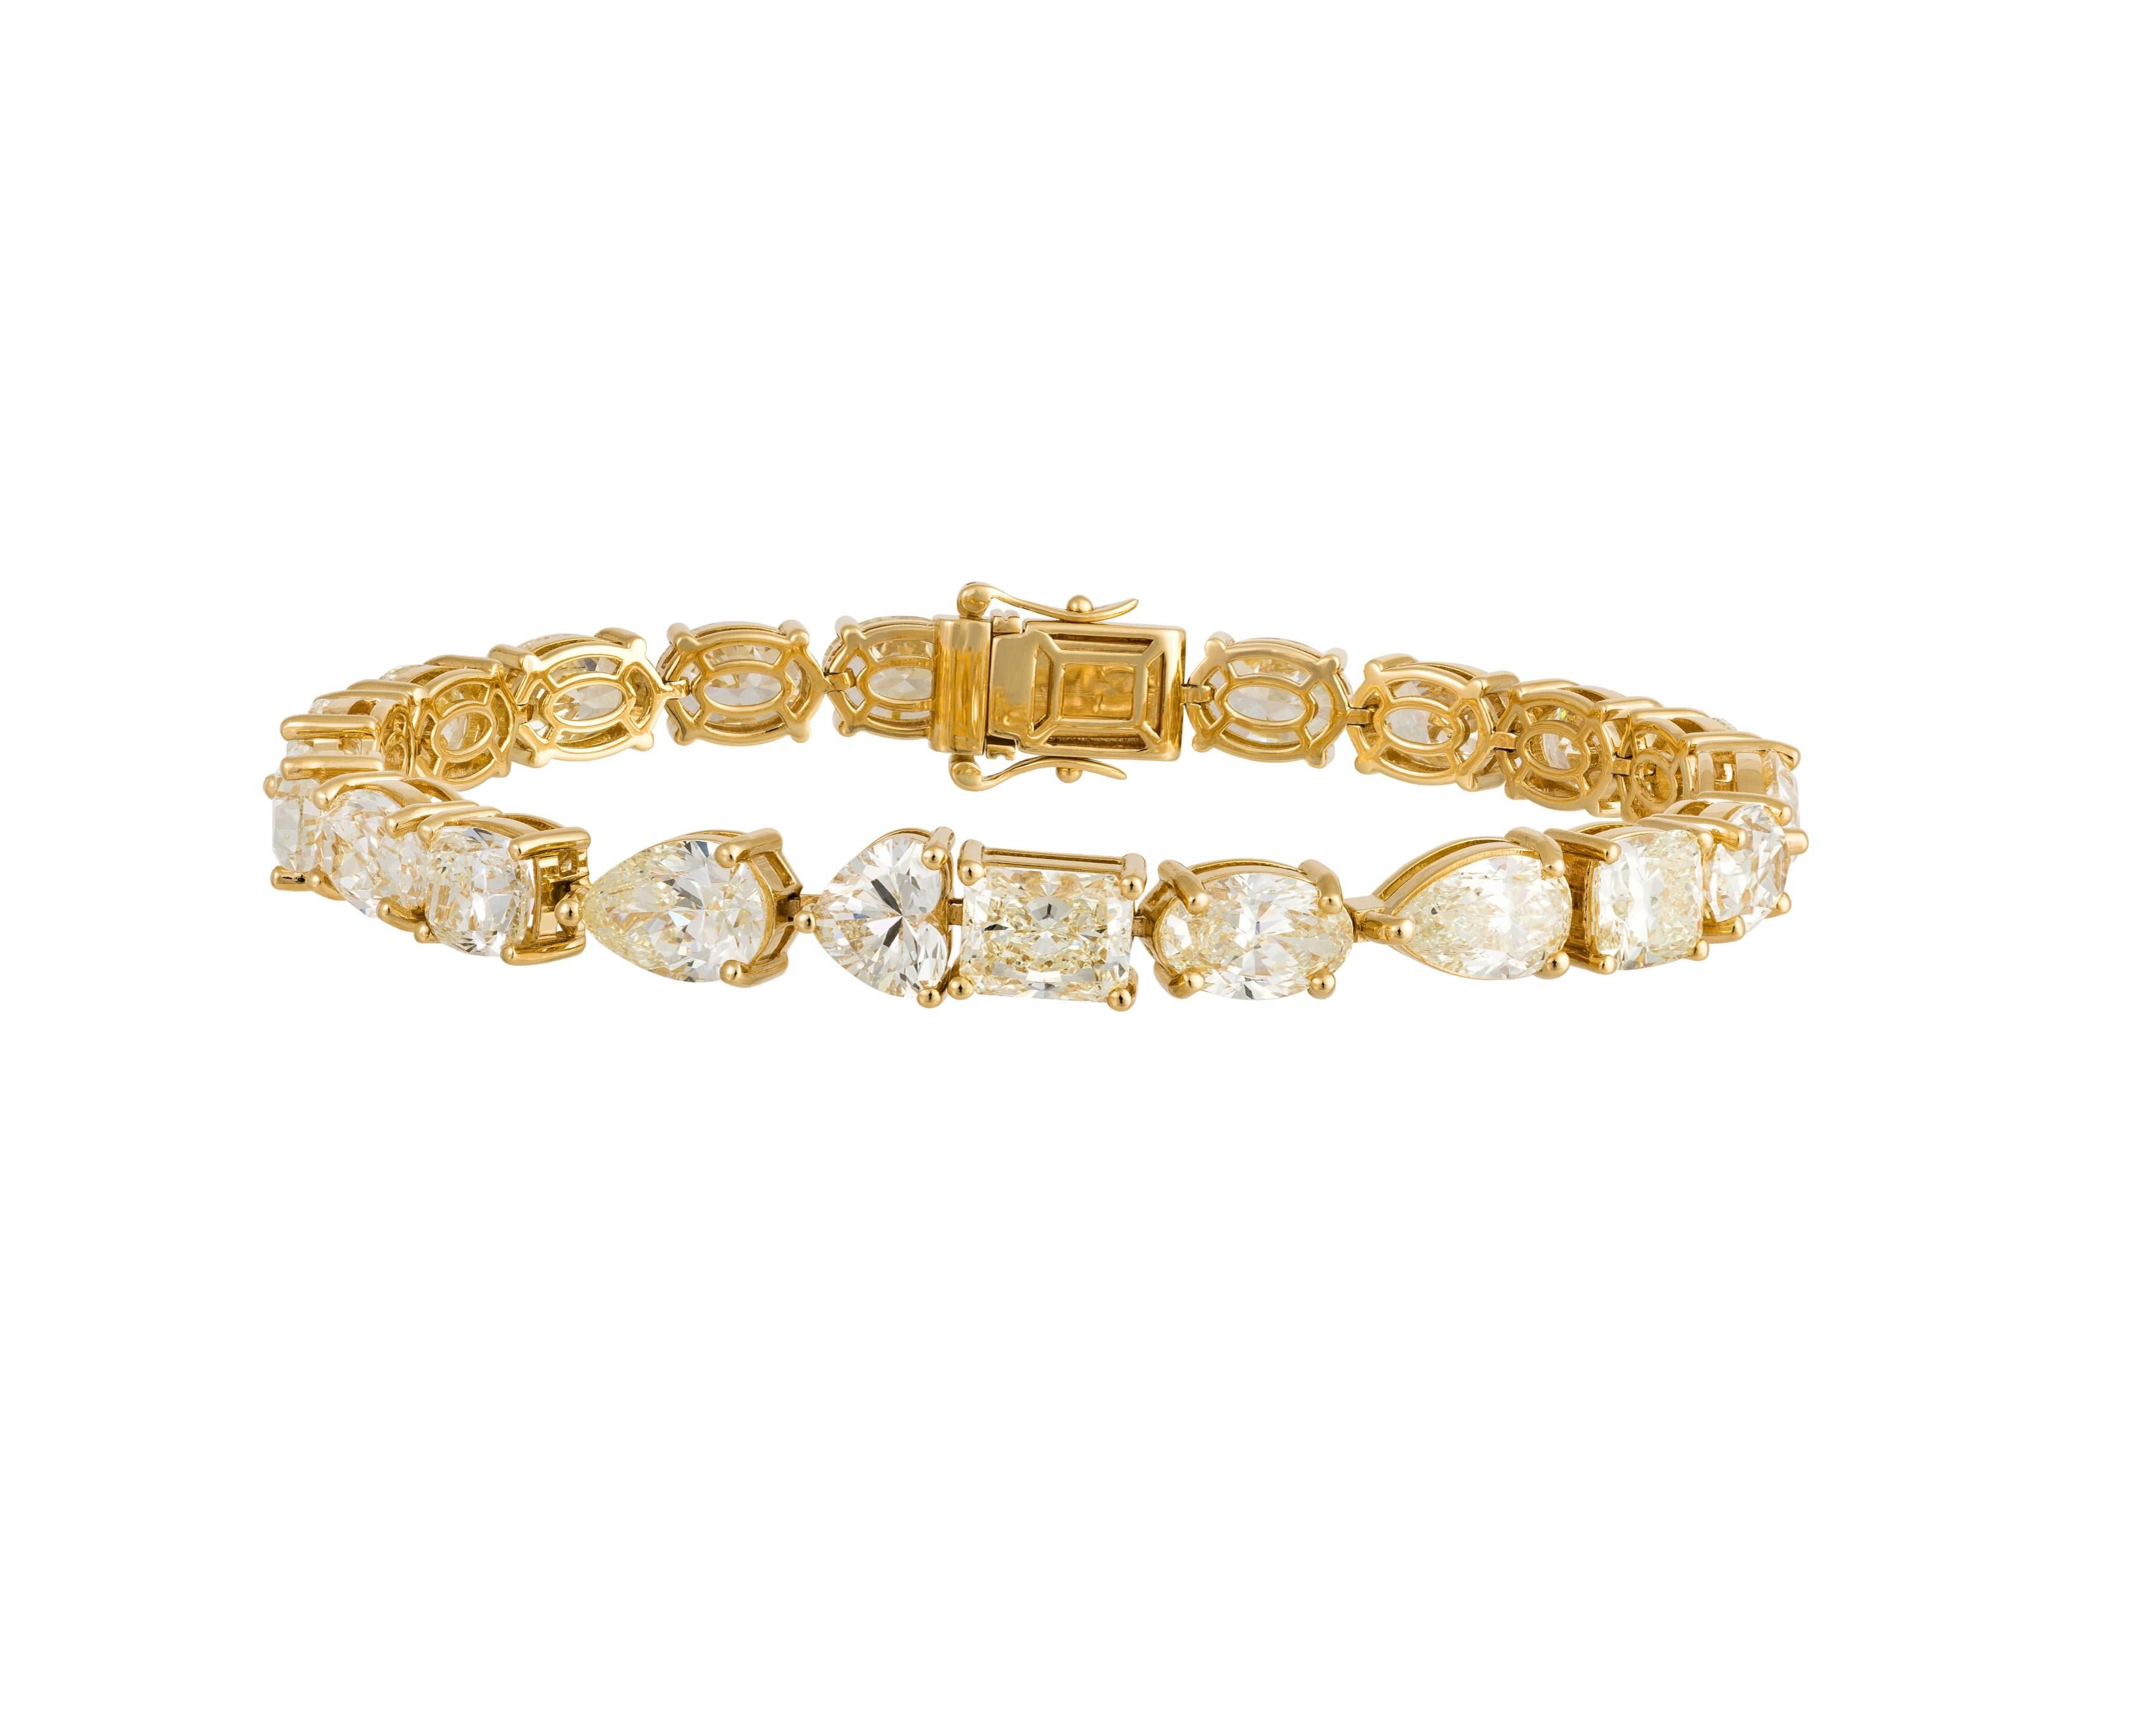 L'article suivant que nous vous proposons est ce magnifique bracelet de tennis en or jaune 18KT, orné d'un grand diamant jaune de taille fantaisie. Le bracelet est composé de plus de 23CTS de magnifiques diamants de taille ovale, cœur, poire et